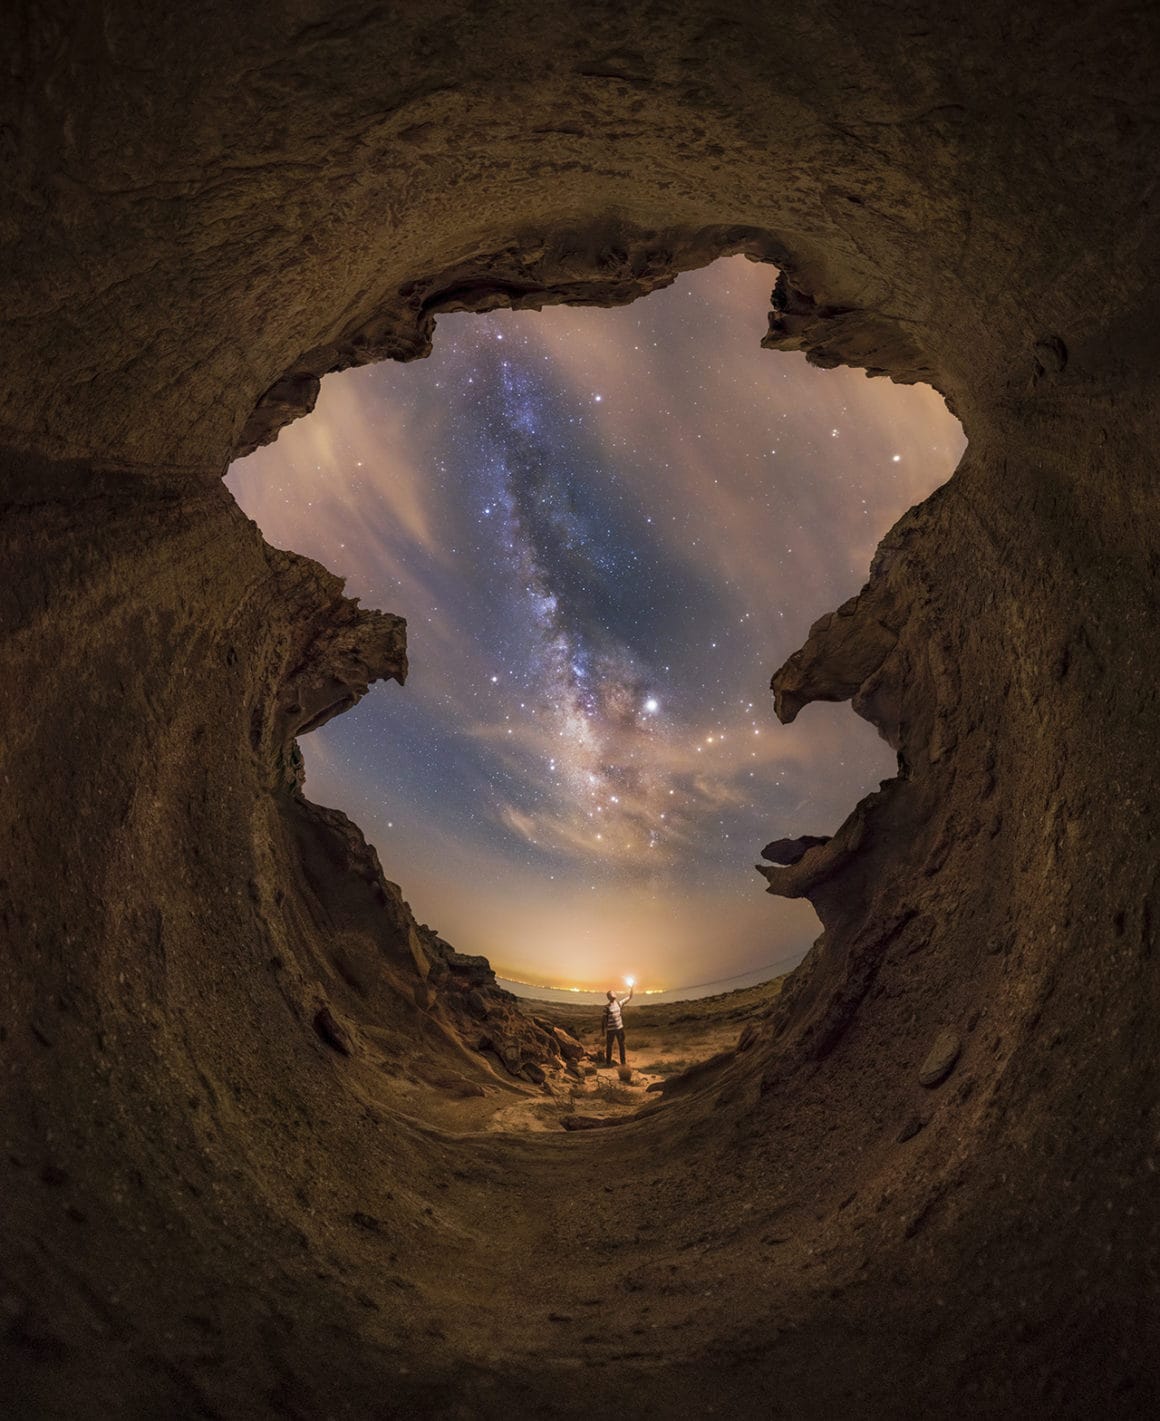 Le photographe Mohammad Sadegh Hayati met à l'honneur la beauté du ciel du golf Persique avec sa photo en compétition pour l'Insight Investment Astronomy Photographer of the Year